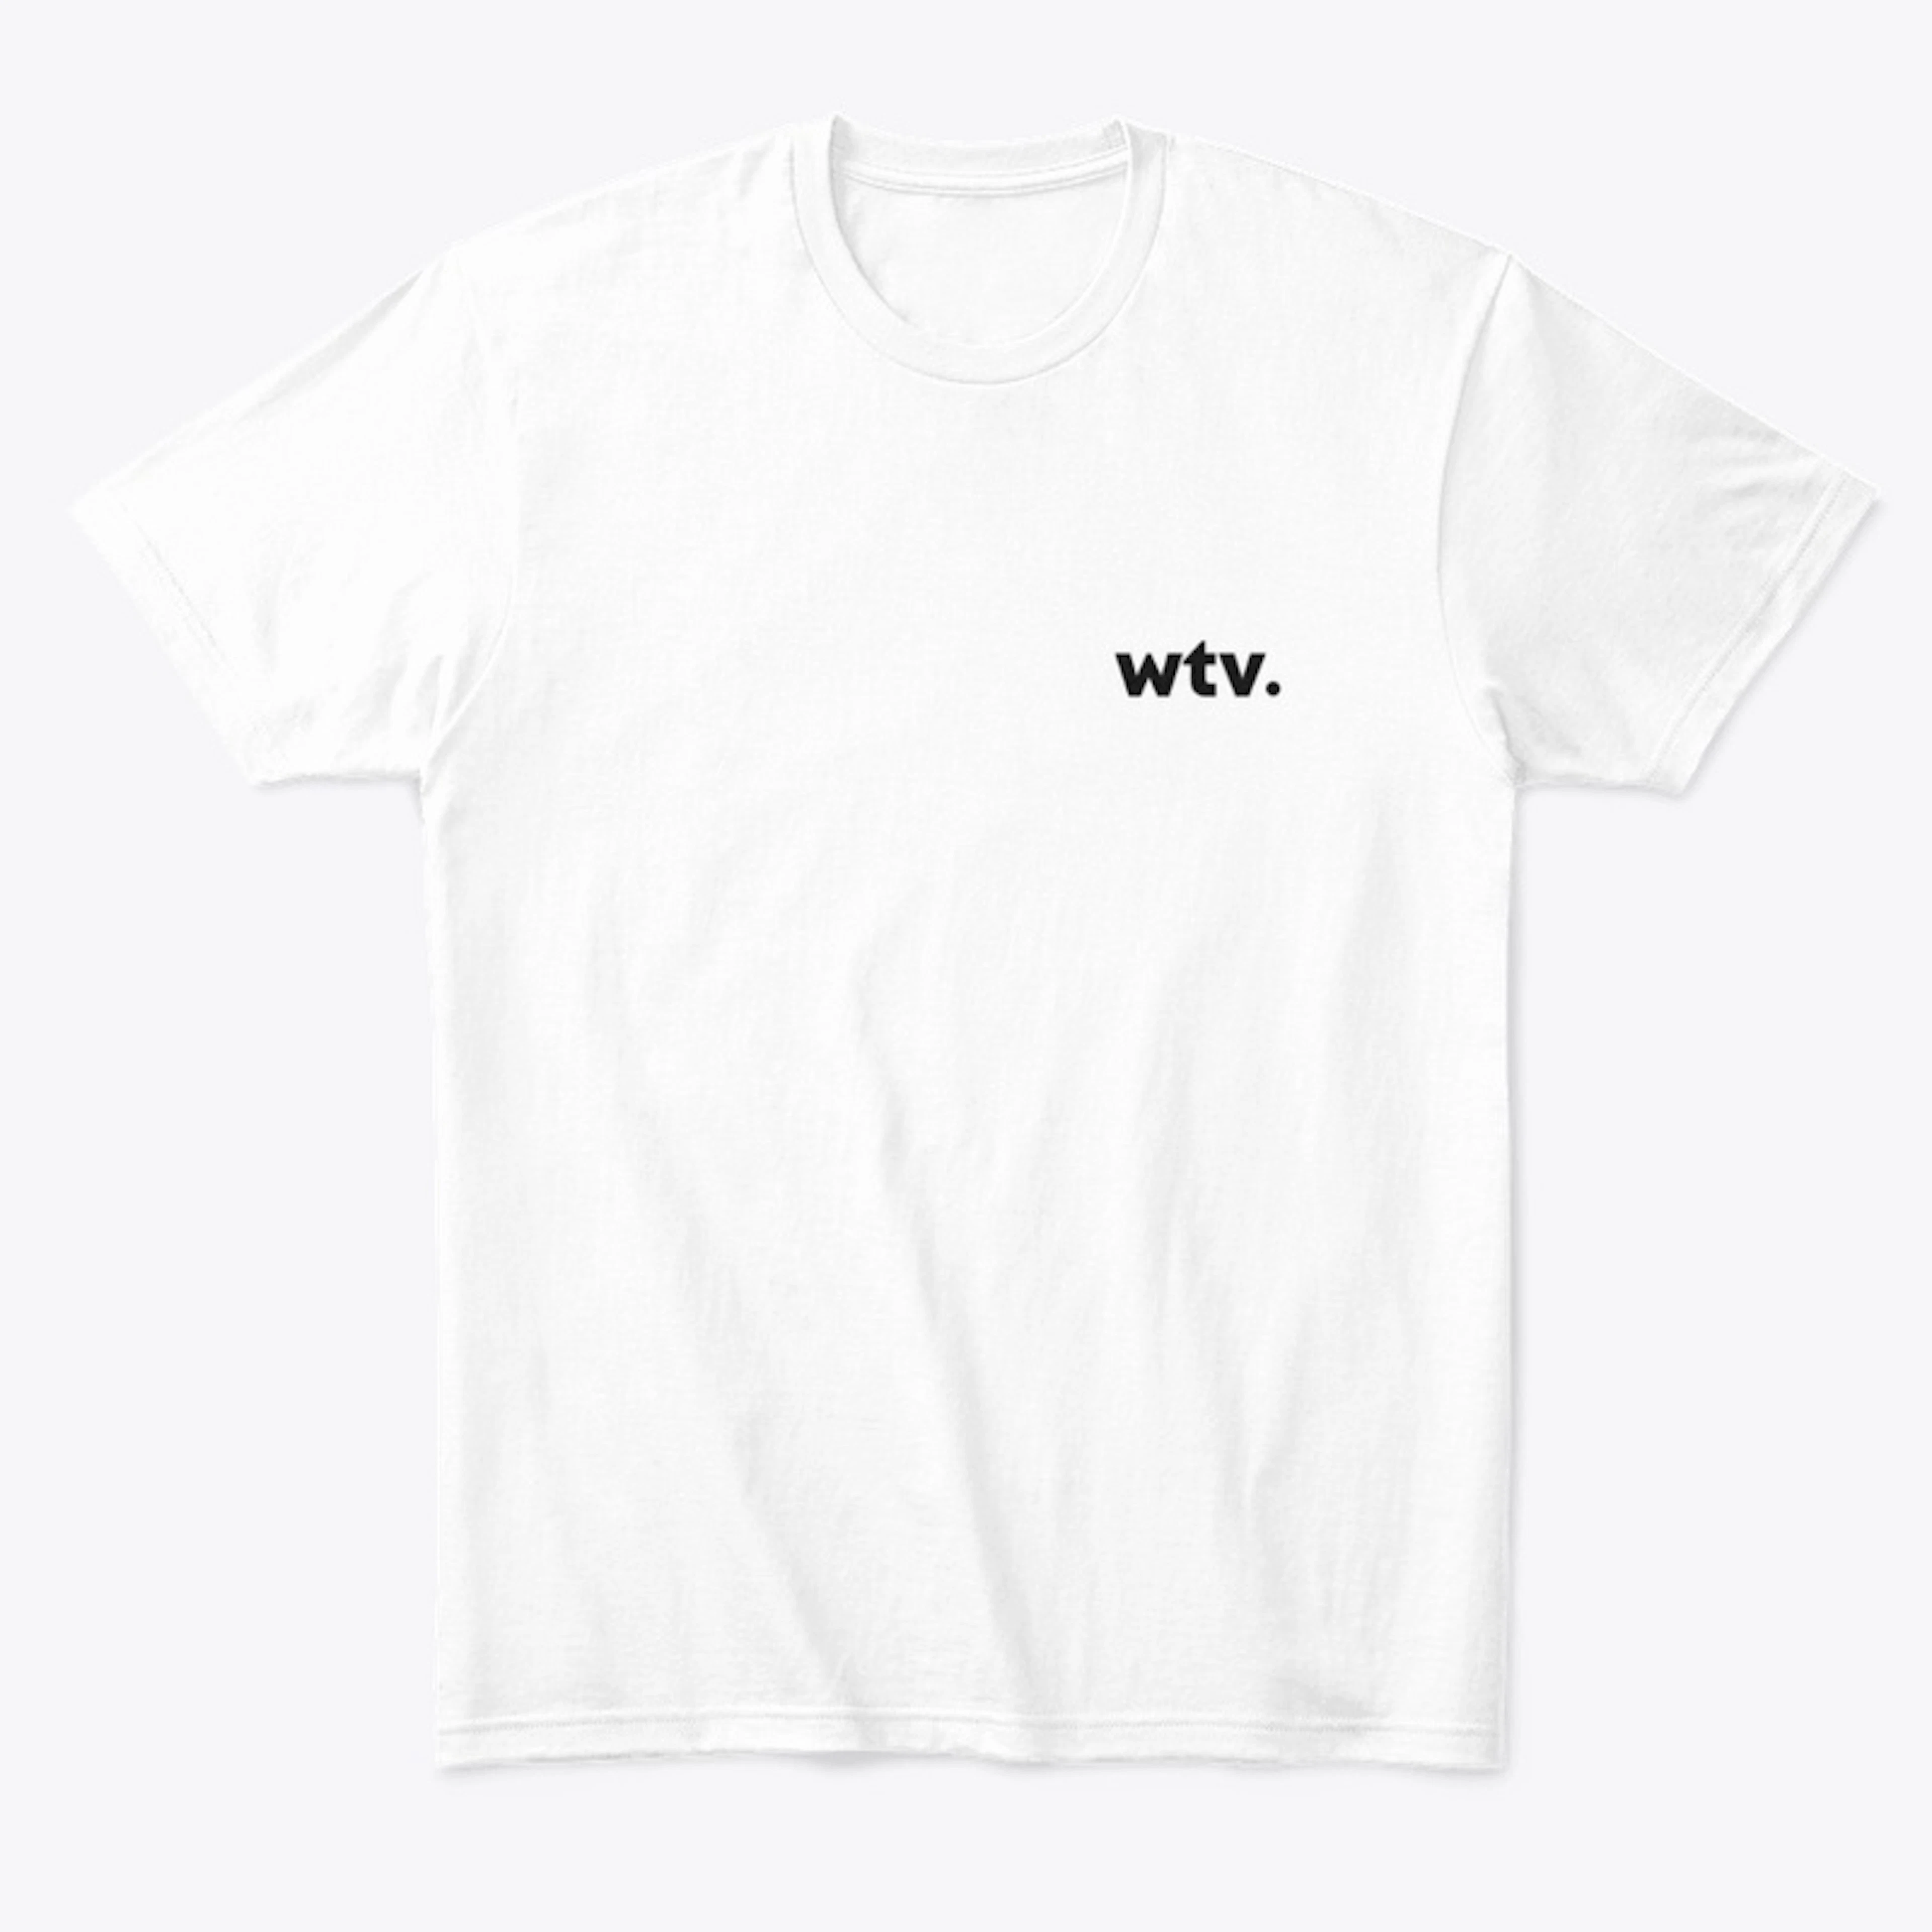 wtv. - black Whatever